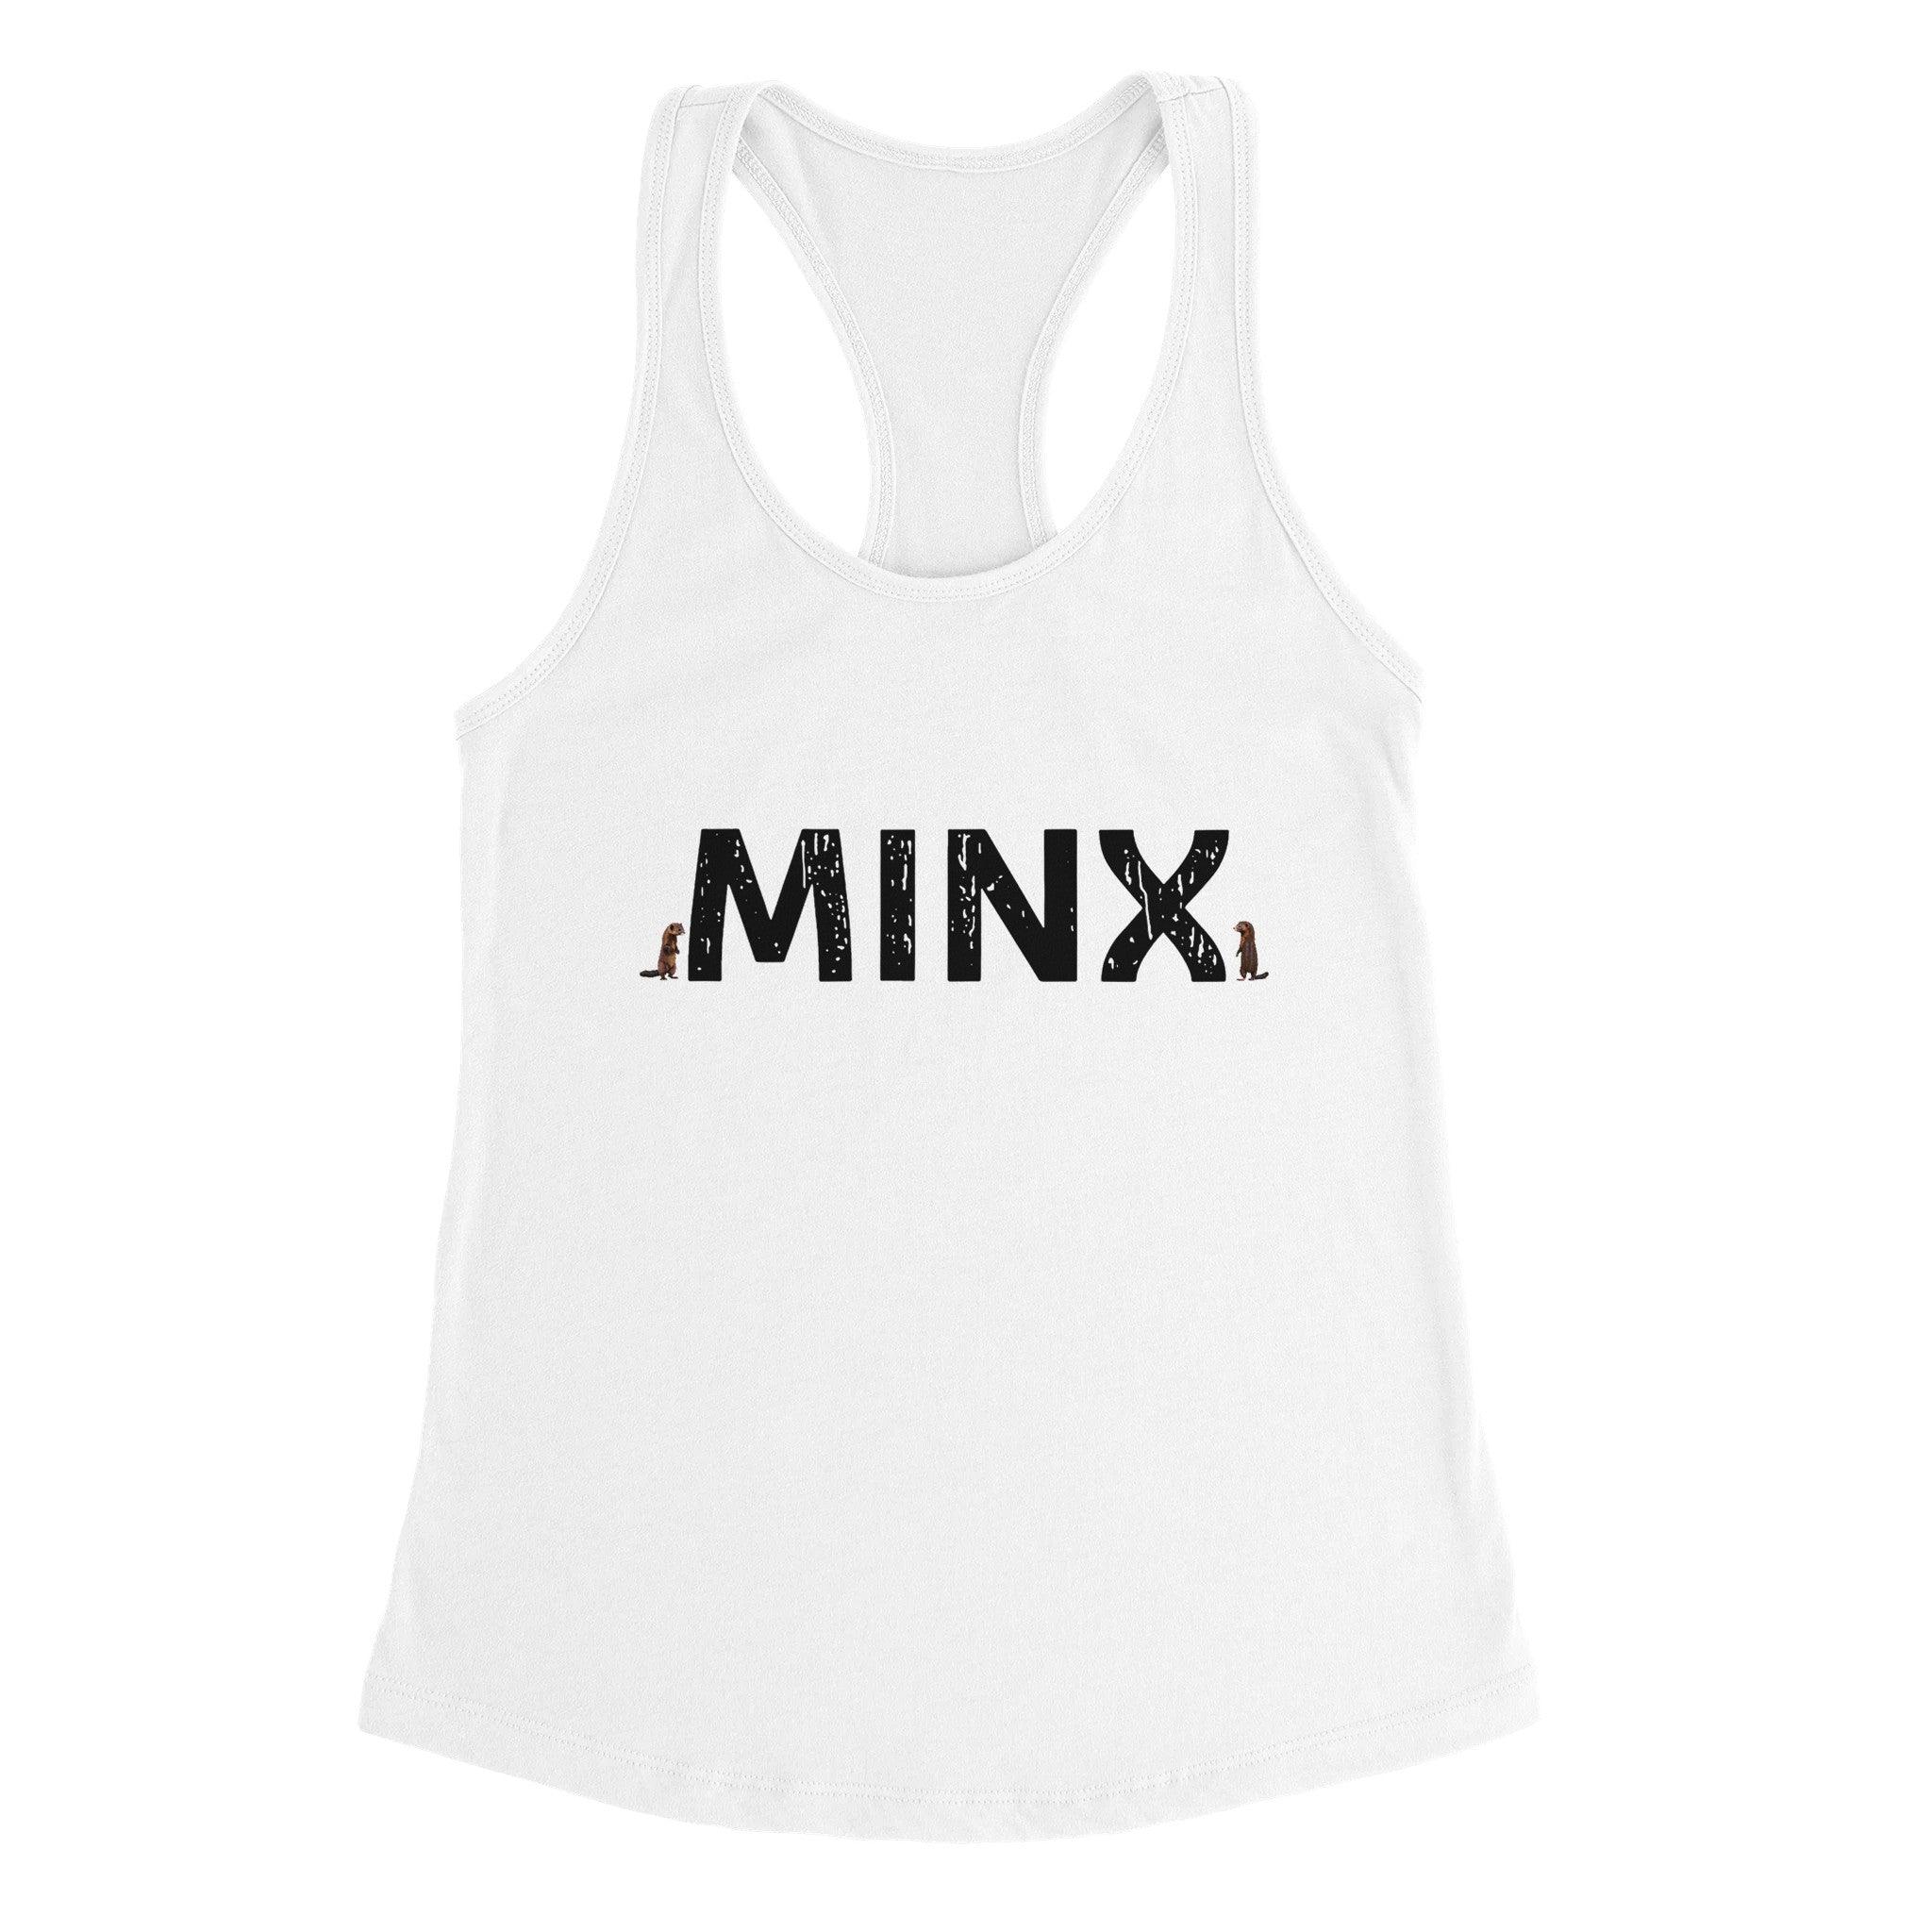 'Minx' Racerback Tank - POMA